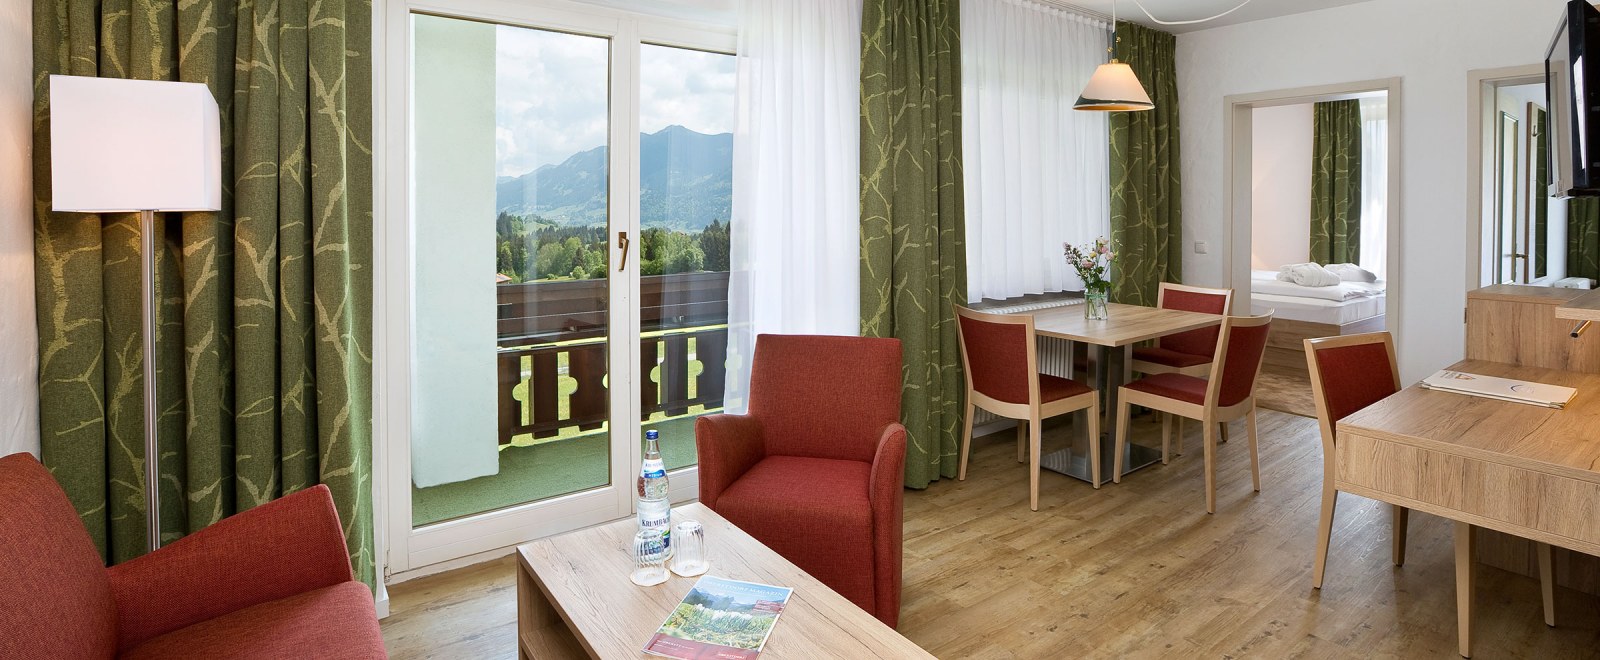 Hotelzimmer für Ihren Urlaub in Oberstdorf im Allgäu